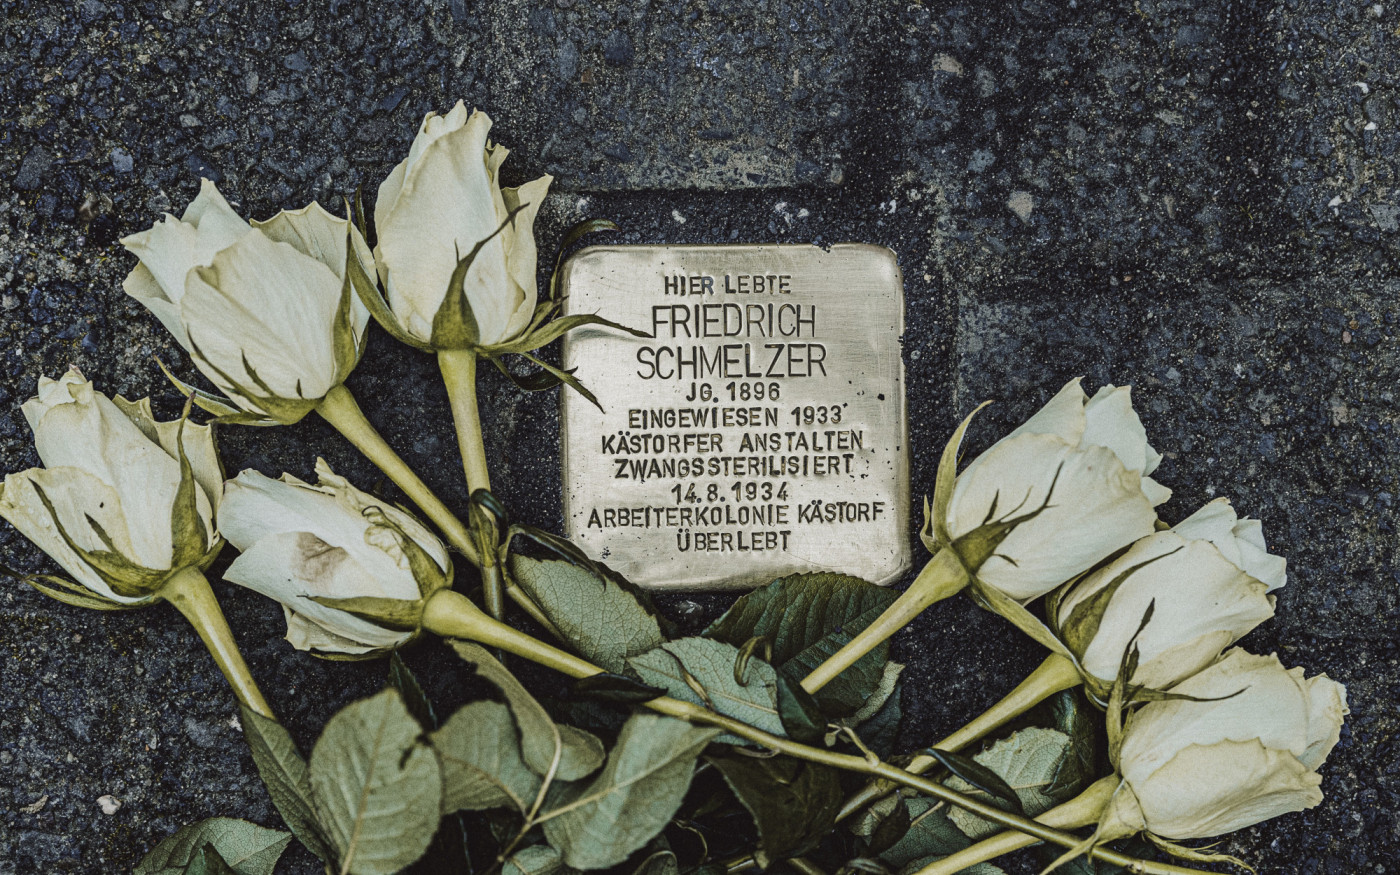 Bis zum Tod blieb er in der Stadt seiner Peiniger: Erst 1987 starb Friedrich Schmelzer in Kästorf, wo einst seine Unfruchtbarmachung befohlen wurde